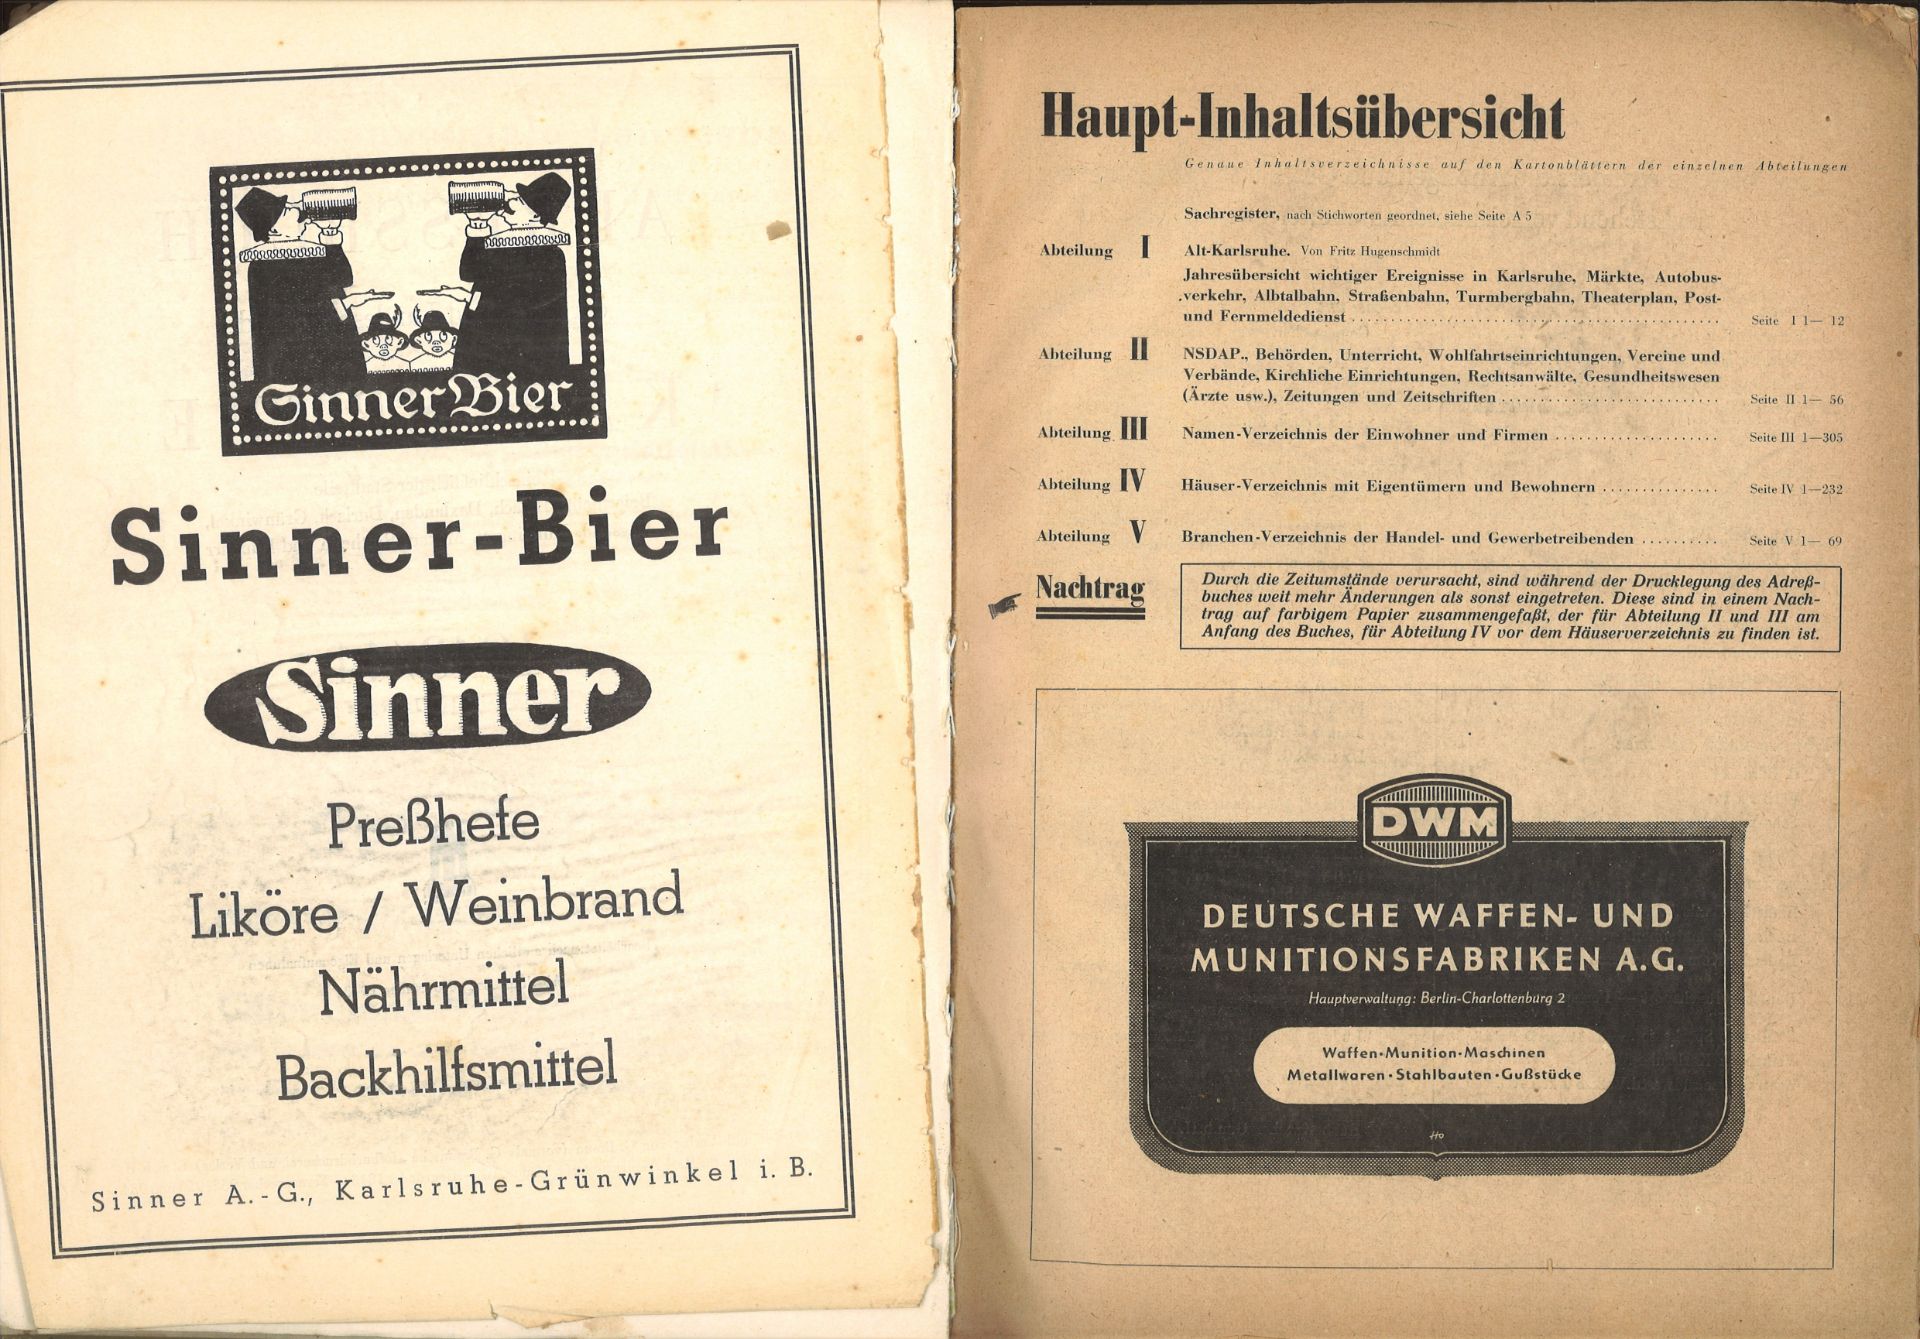 Adressbuch der Stadt Karlsruhe von 1943/44, siebzigster Jahrgang, Adressbuchverlag G. Braun, - Image 2 of 2